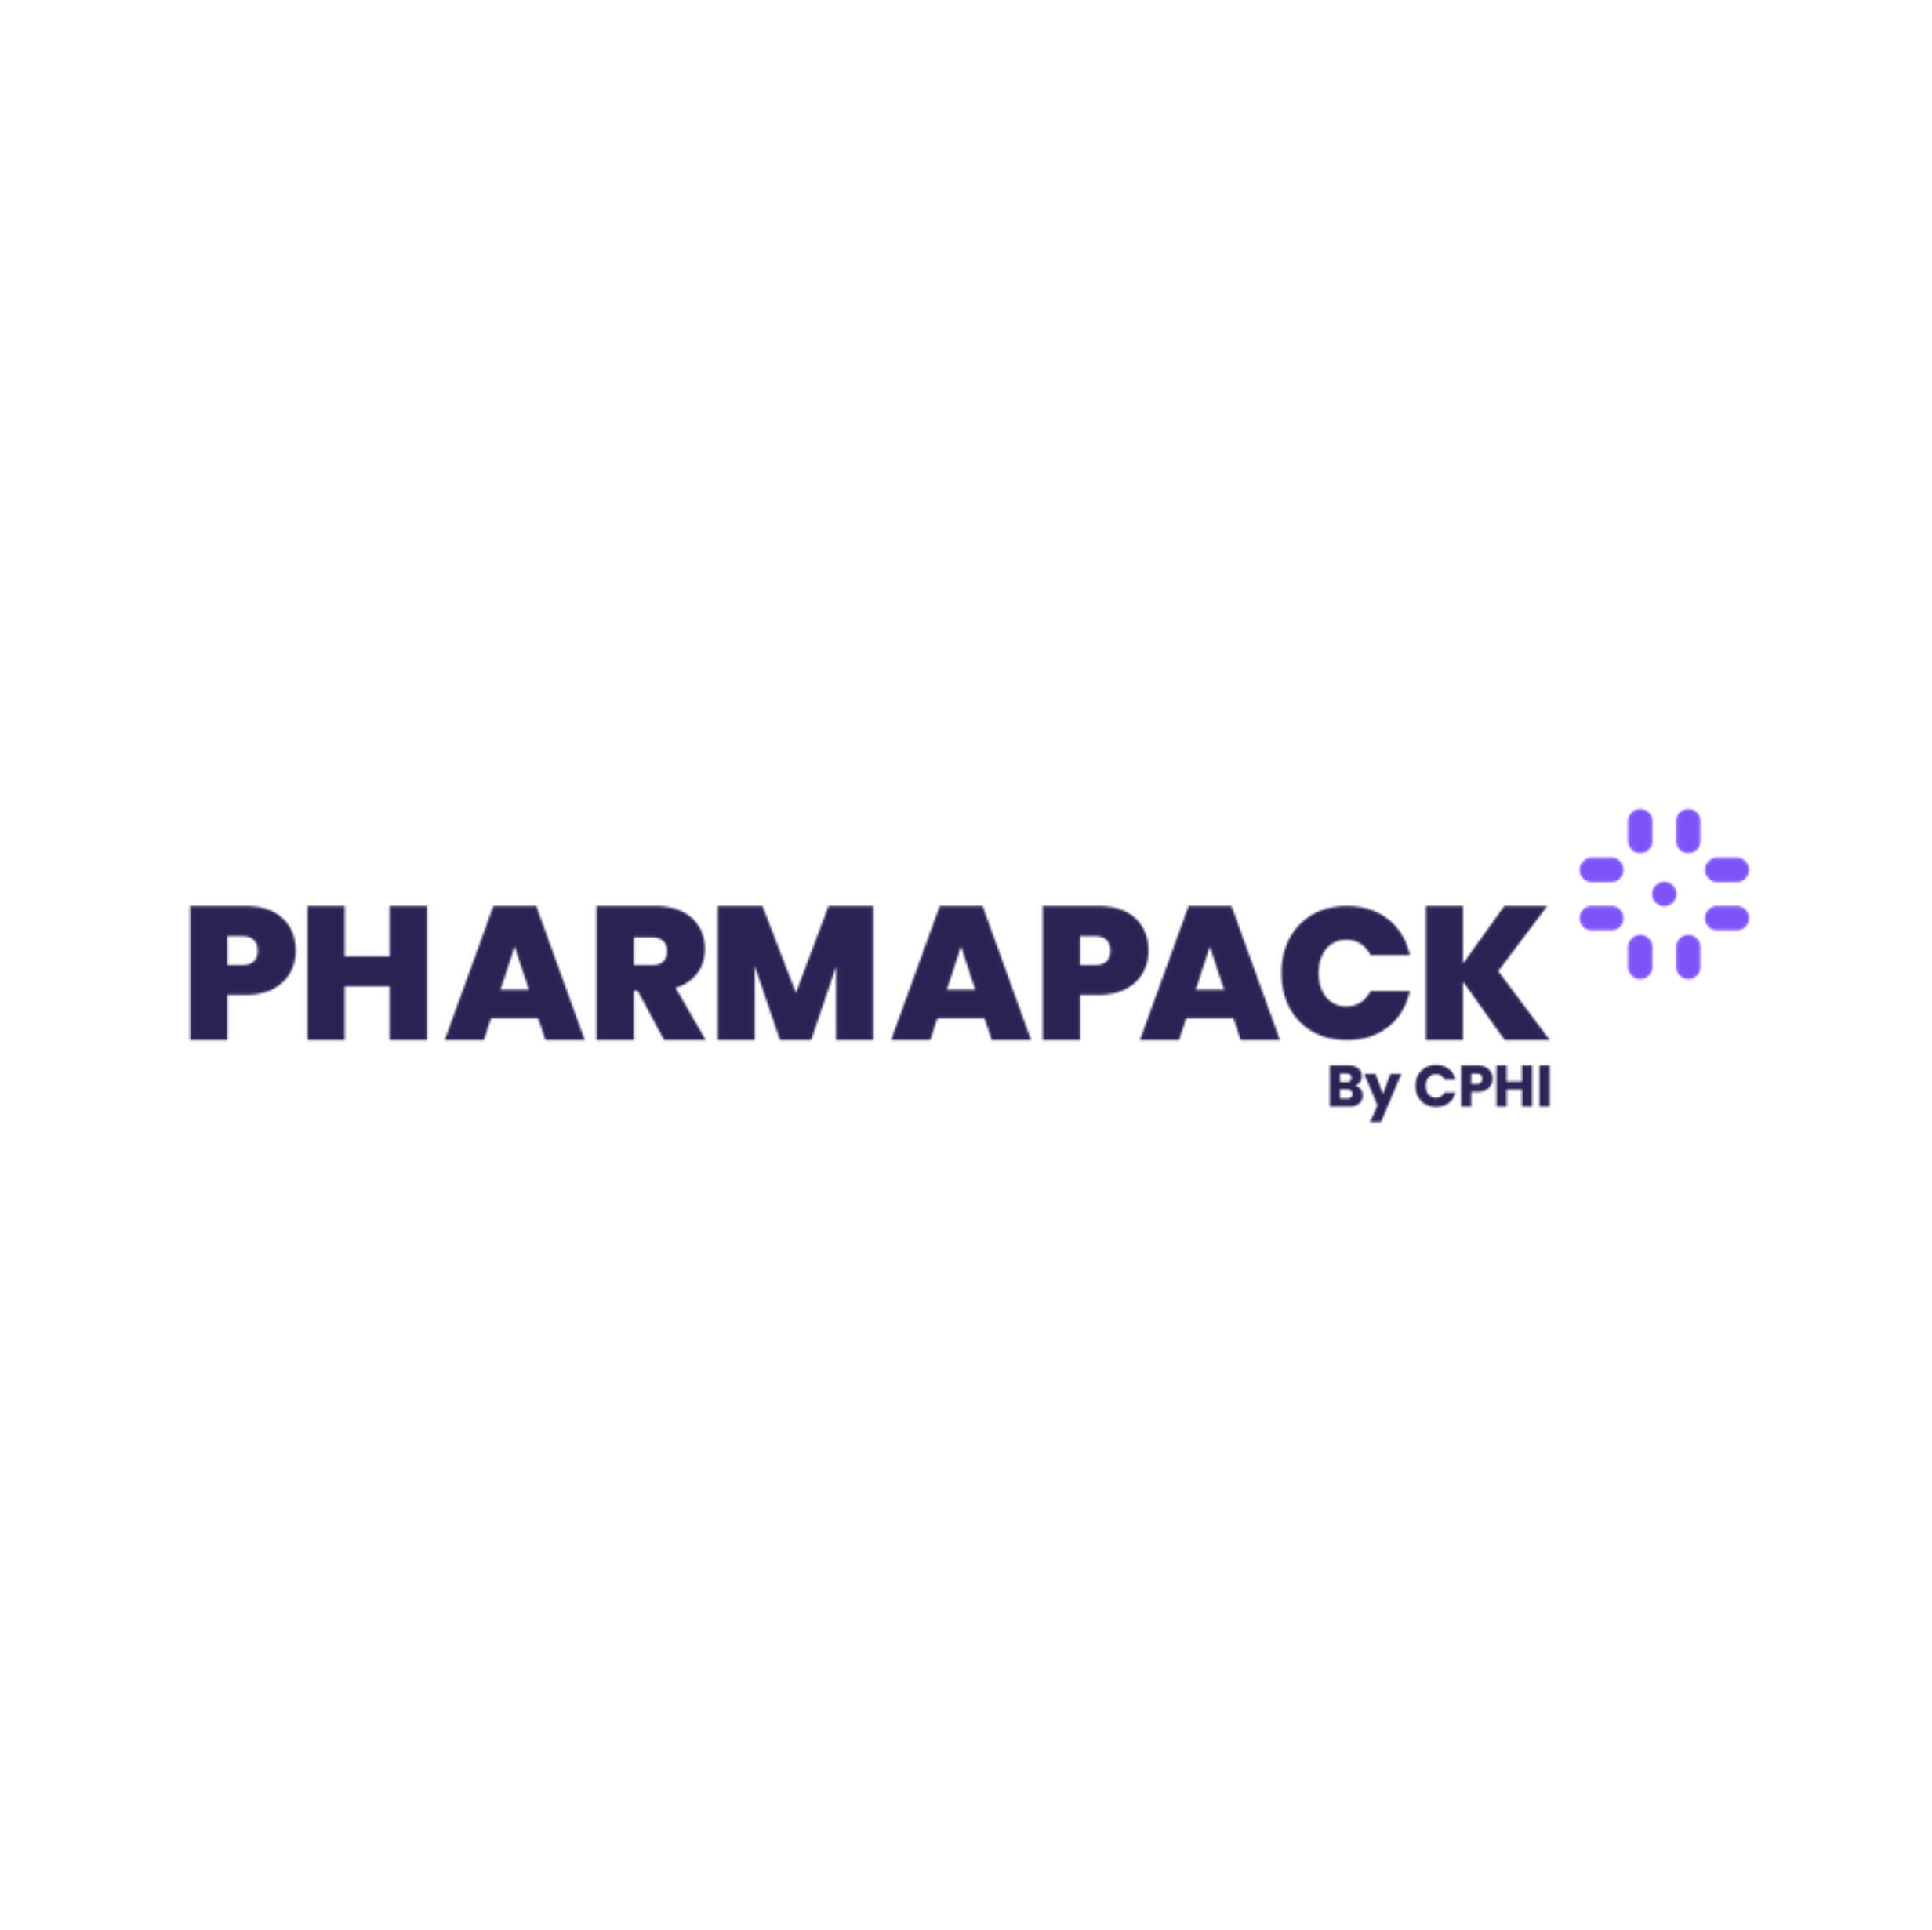 Pharmapack Europe